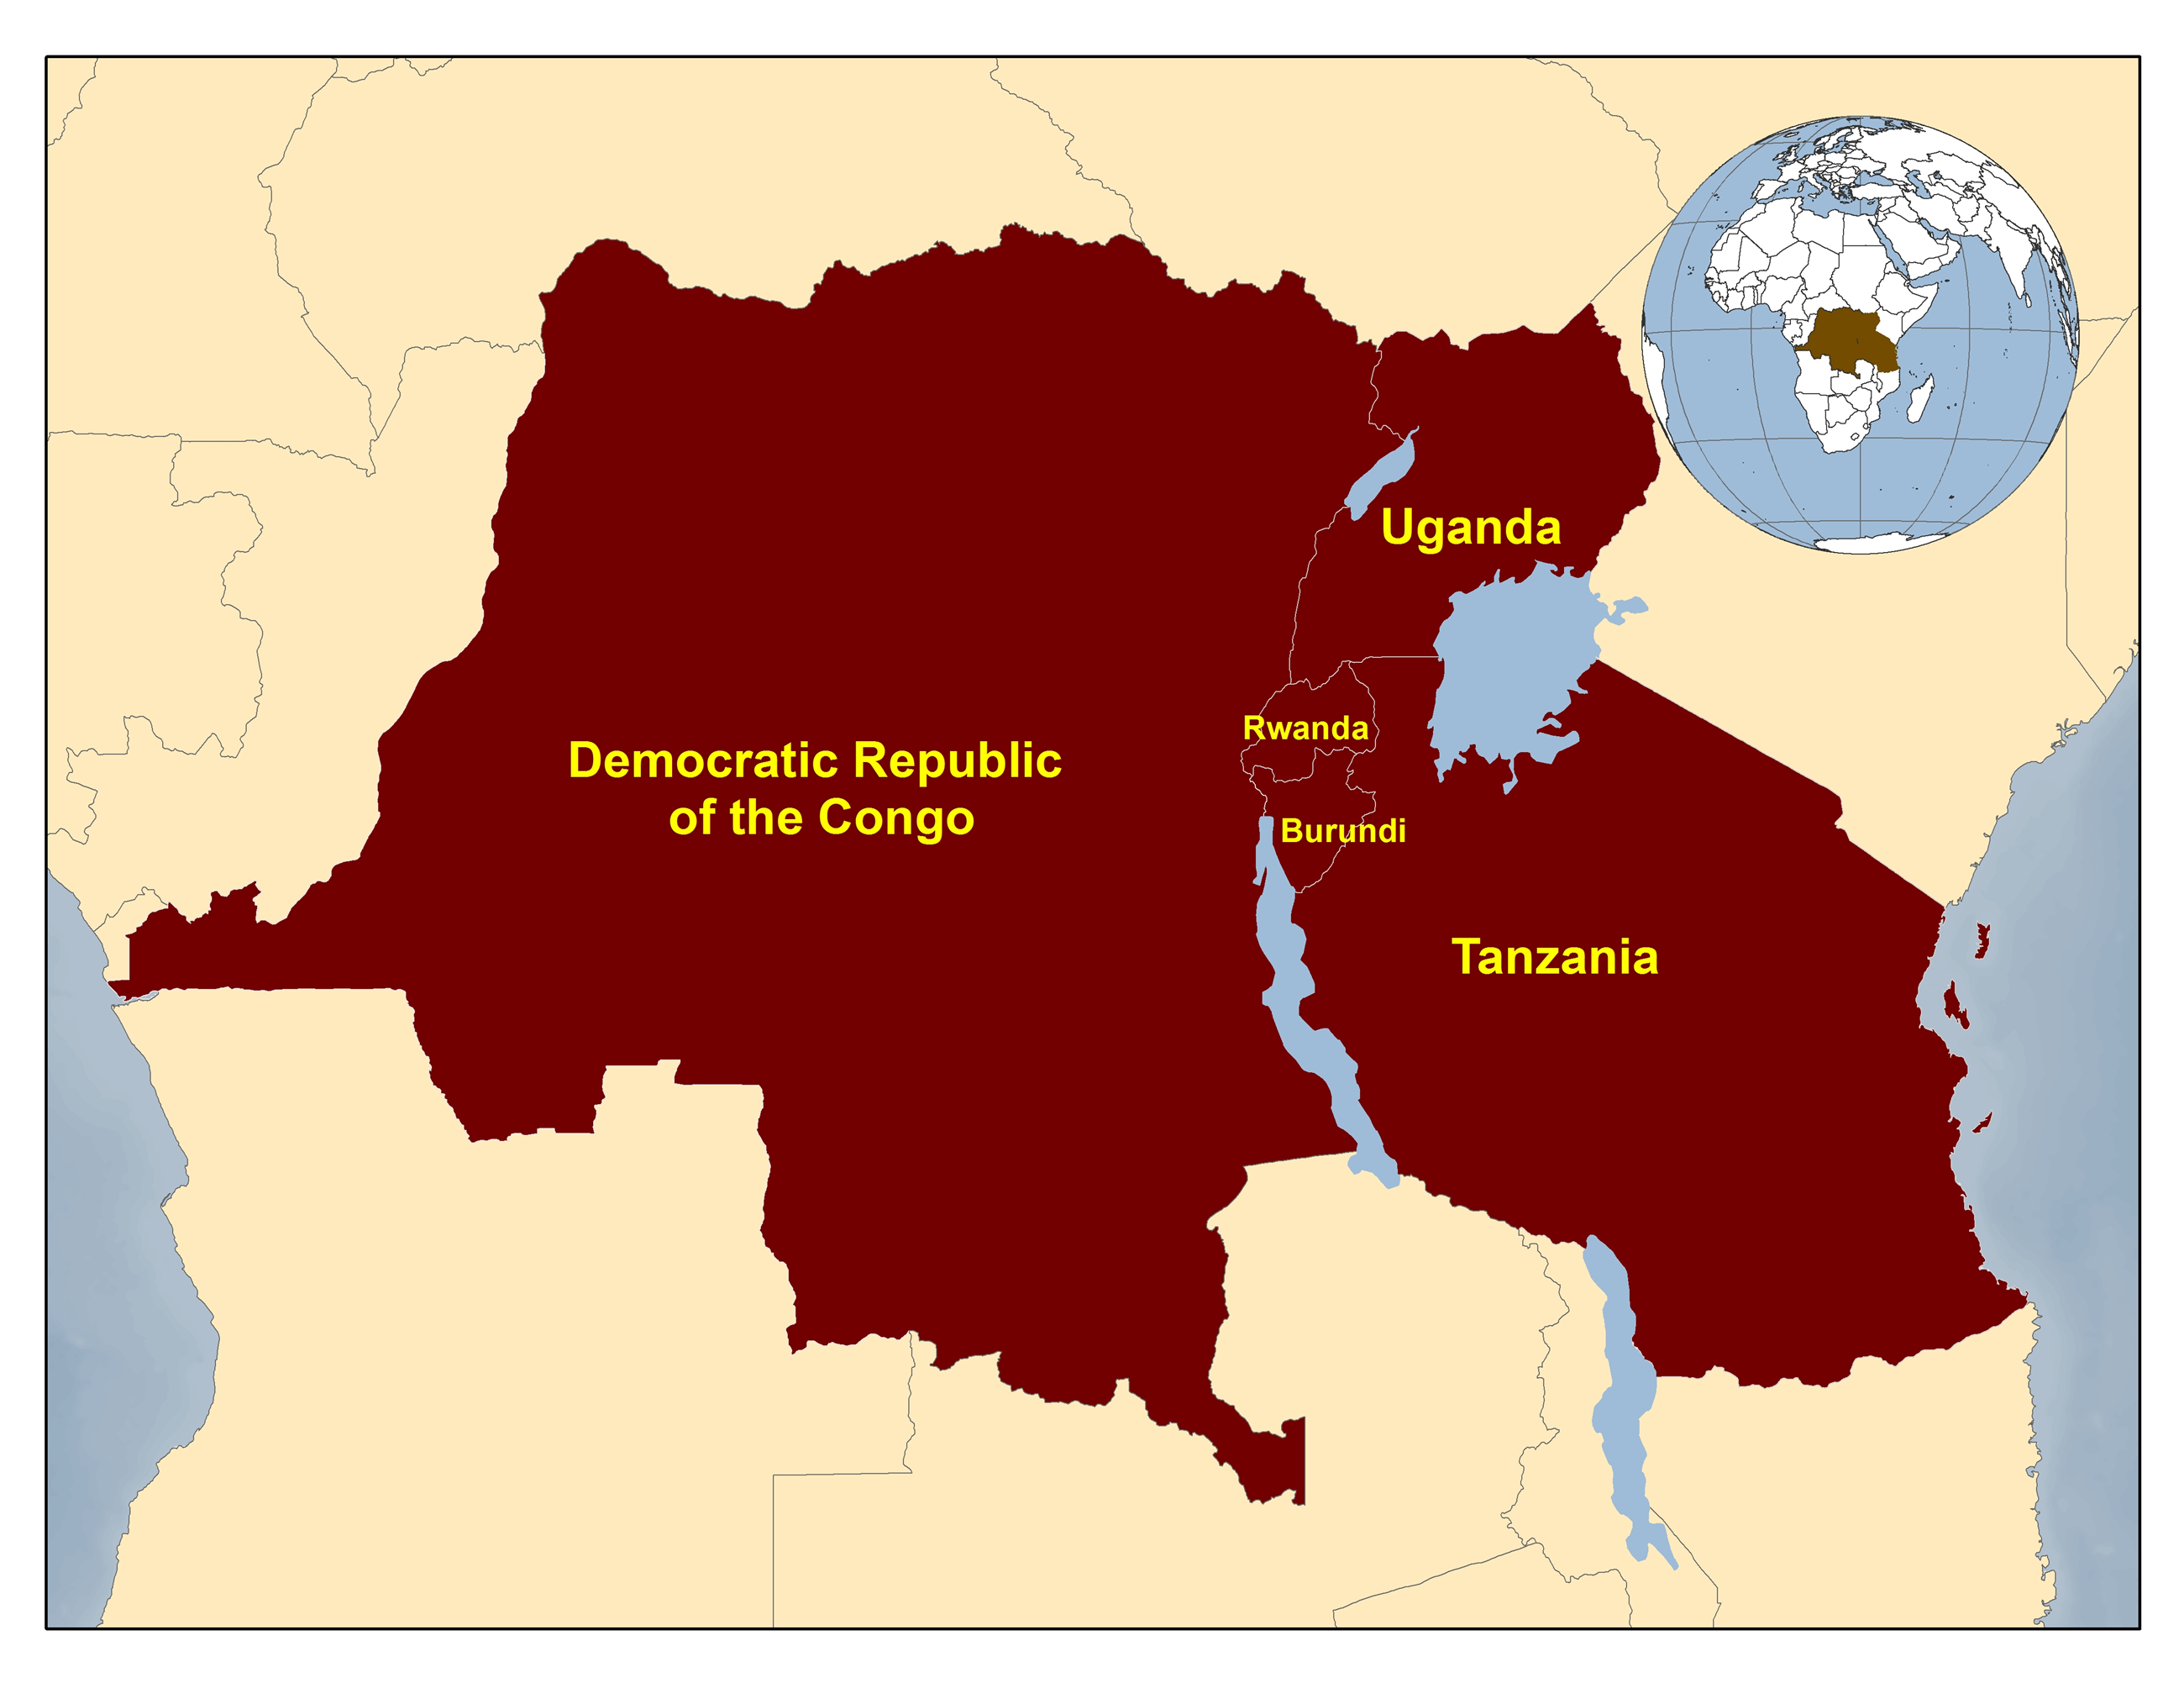 Map of the Democratic Republic of Congo, Burundi, Rwanda, Tanzania, and Uganda